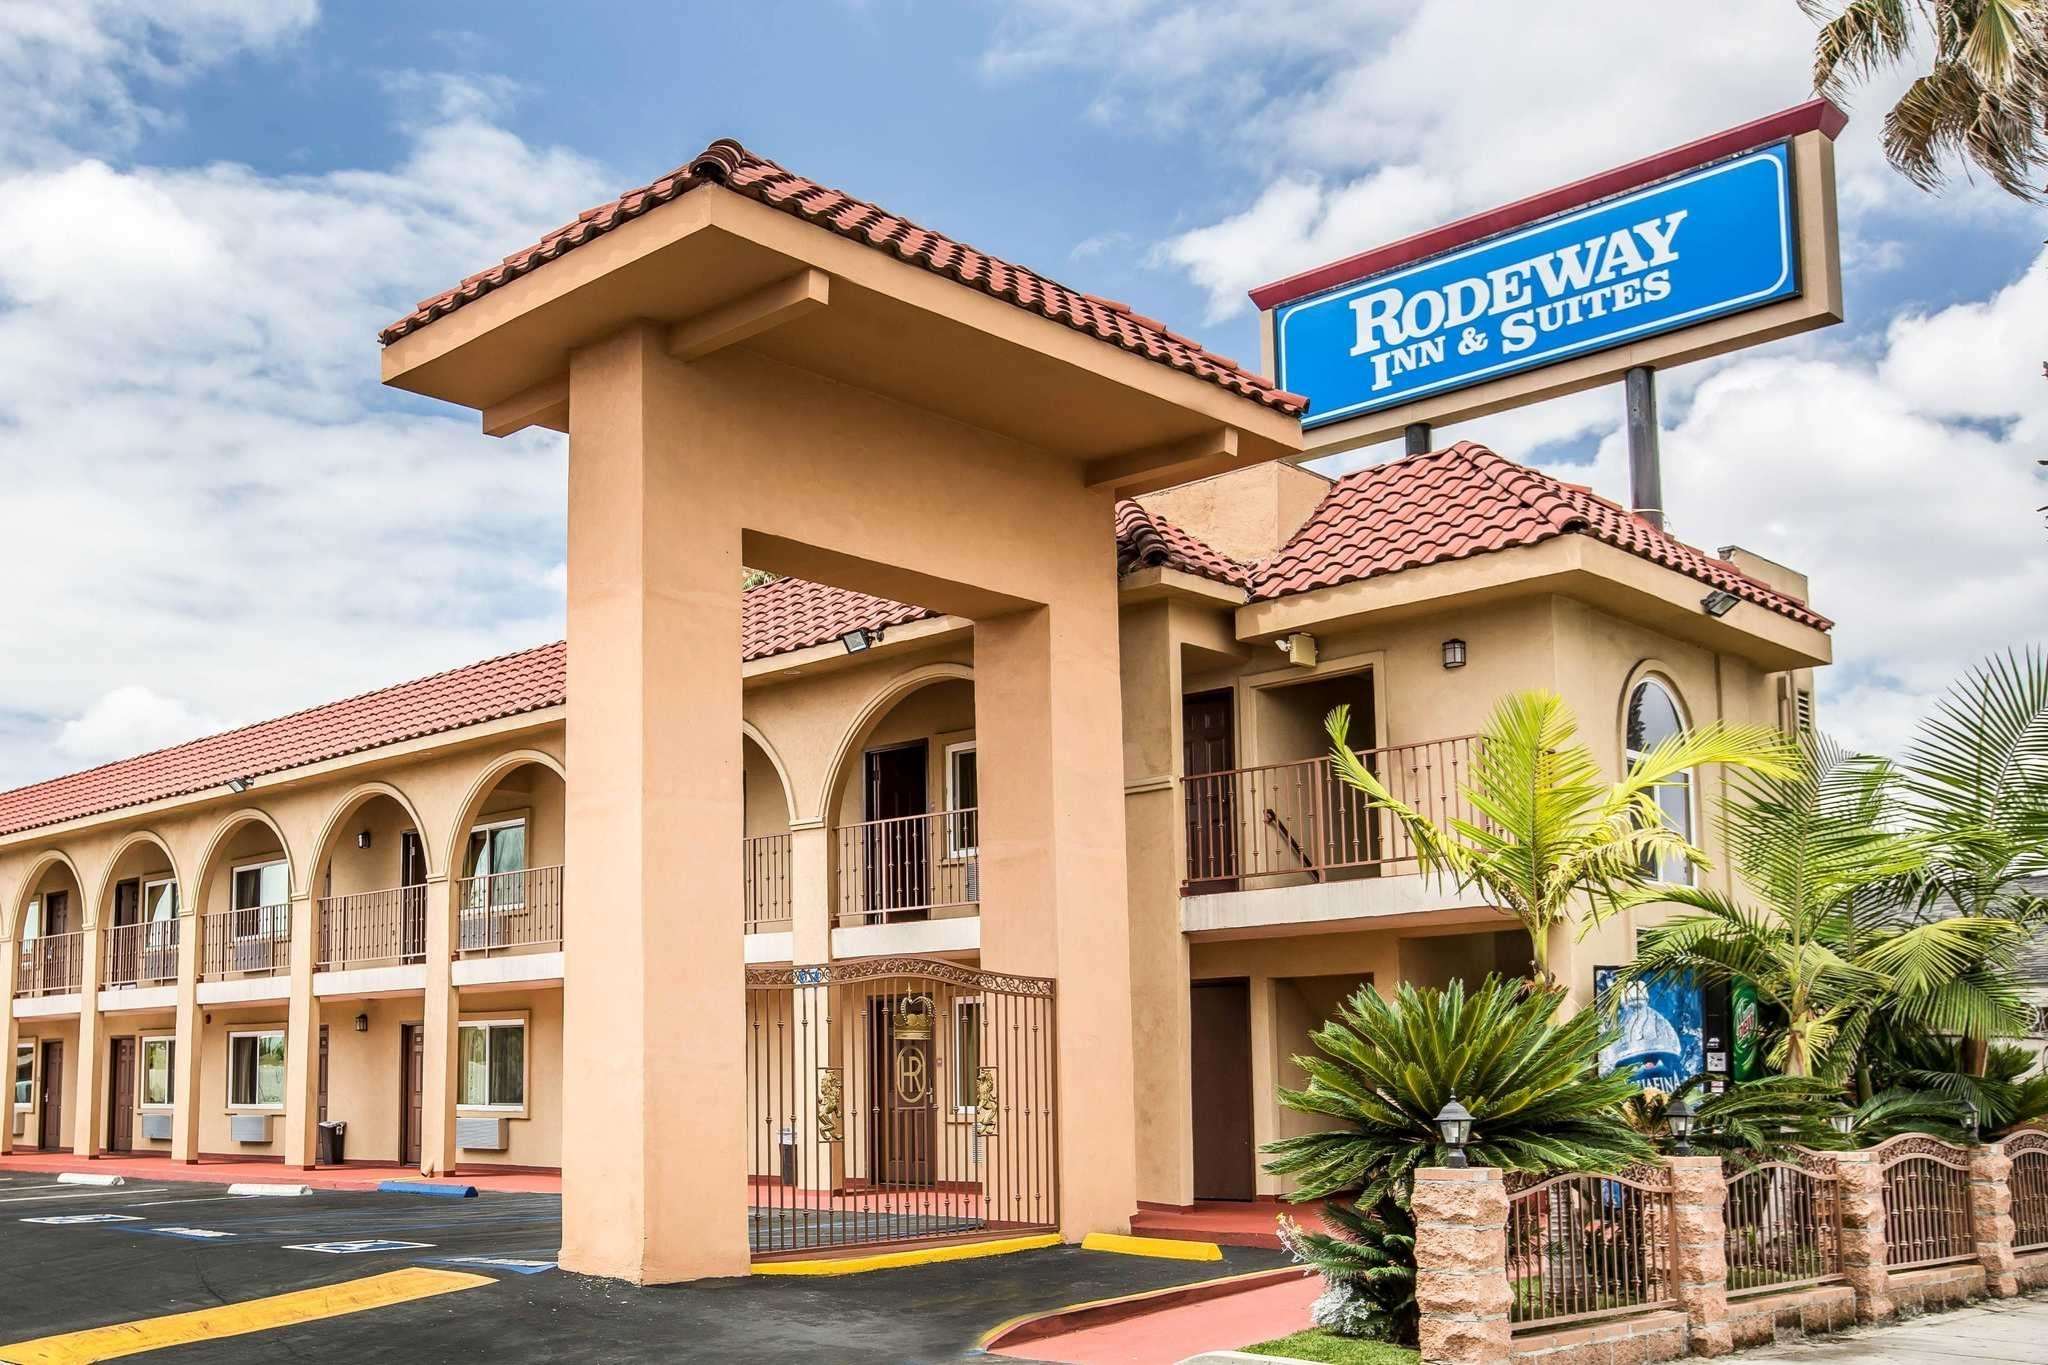 Rodeway Inn & Suites hotel in Bellflower, CA